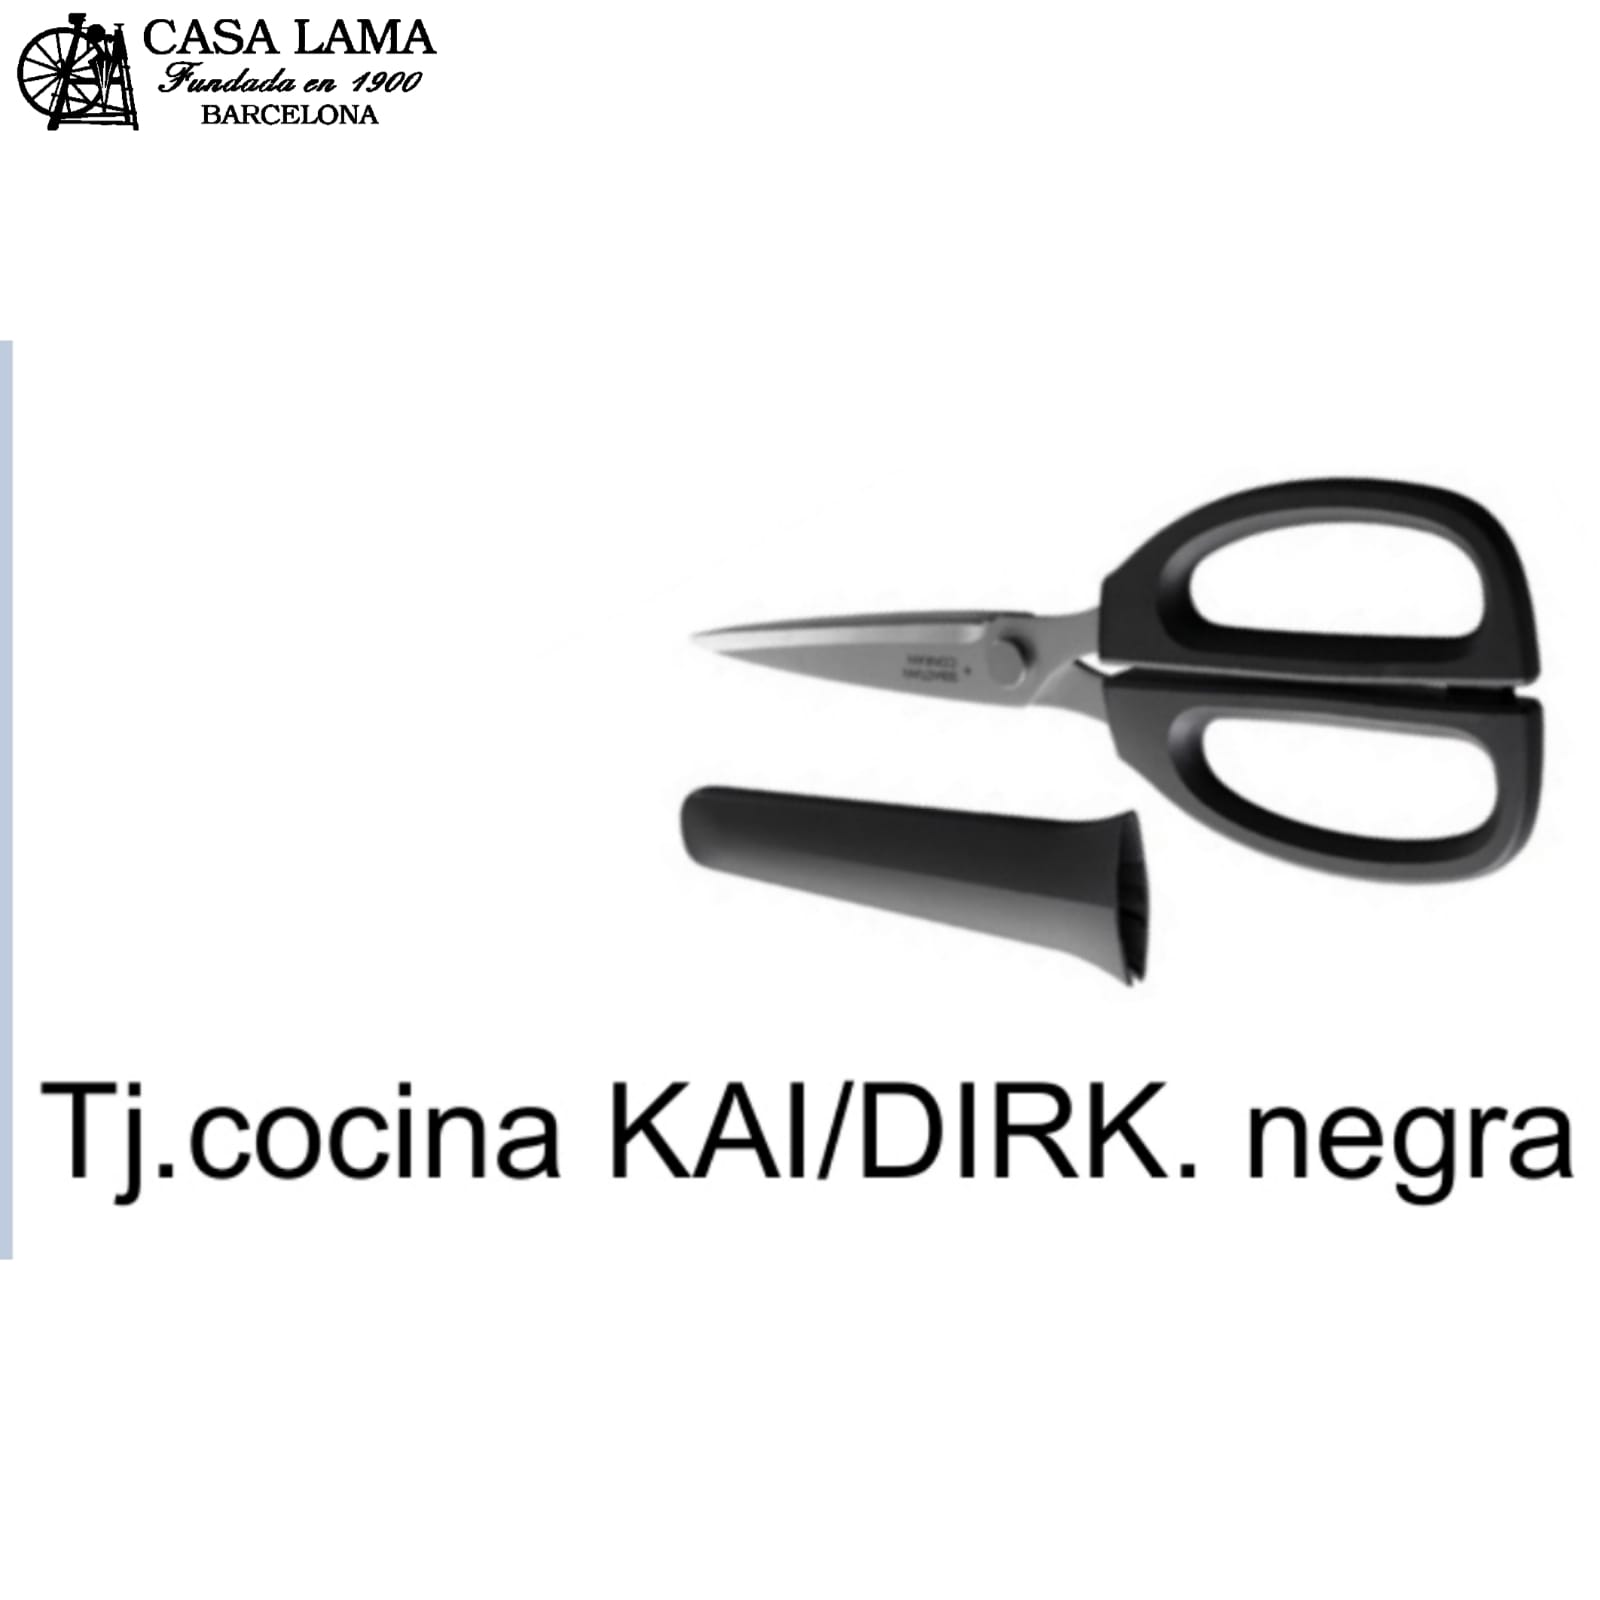 Tijera de cocina Kai/Dirk negra-blanca 